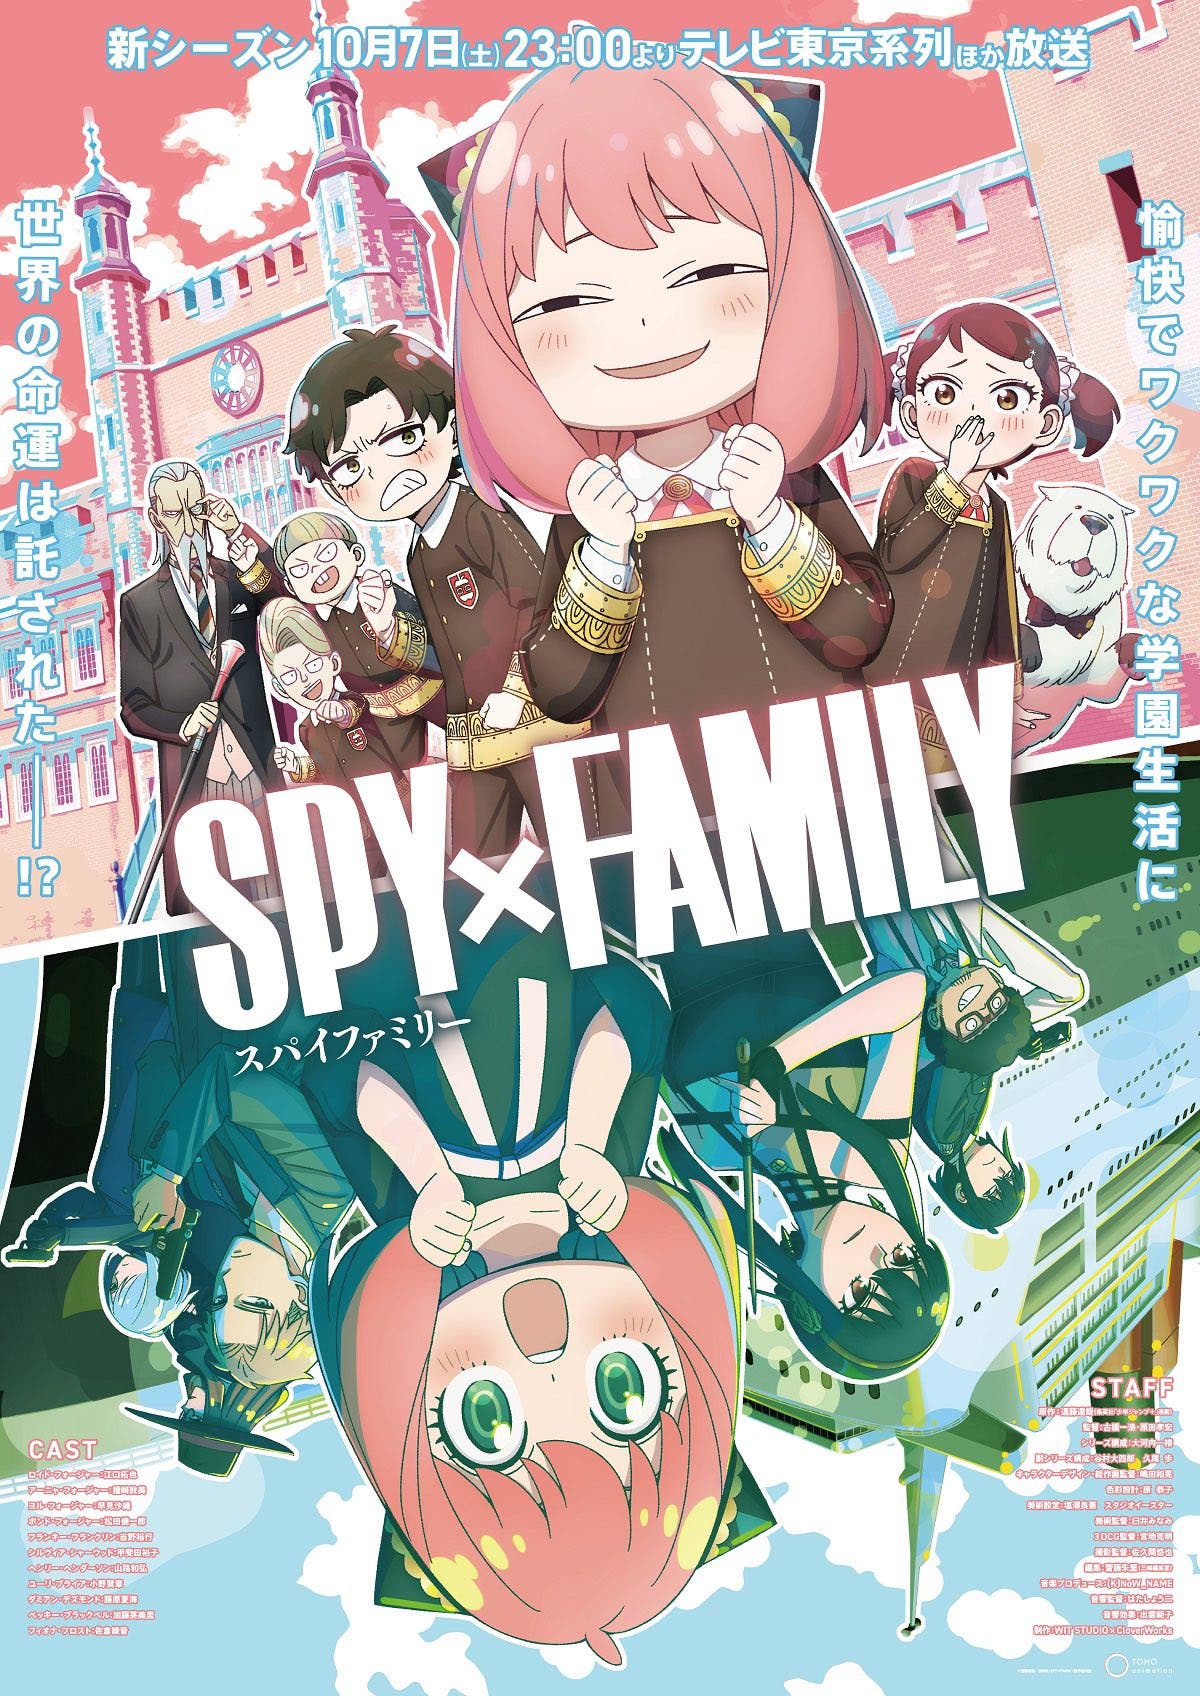 Spy X Family temporada 2 y película: Fecha estreno y tráiler